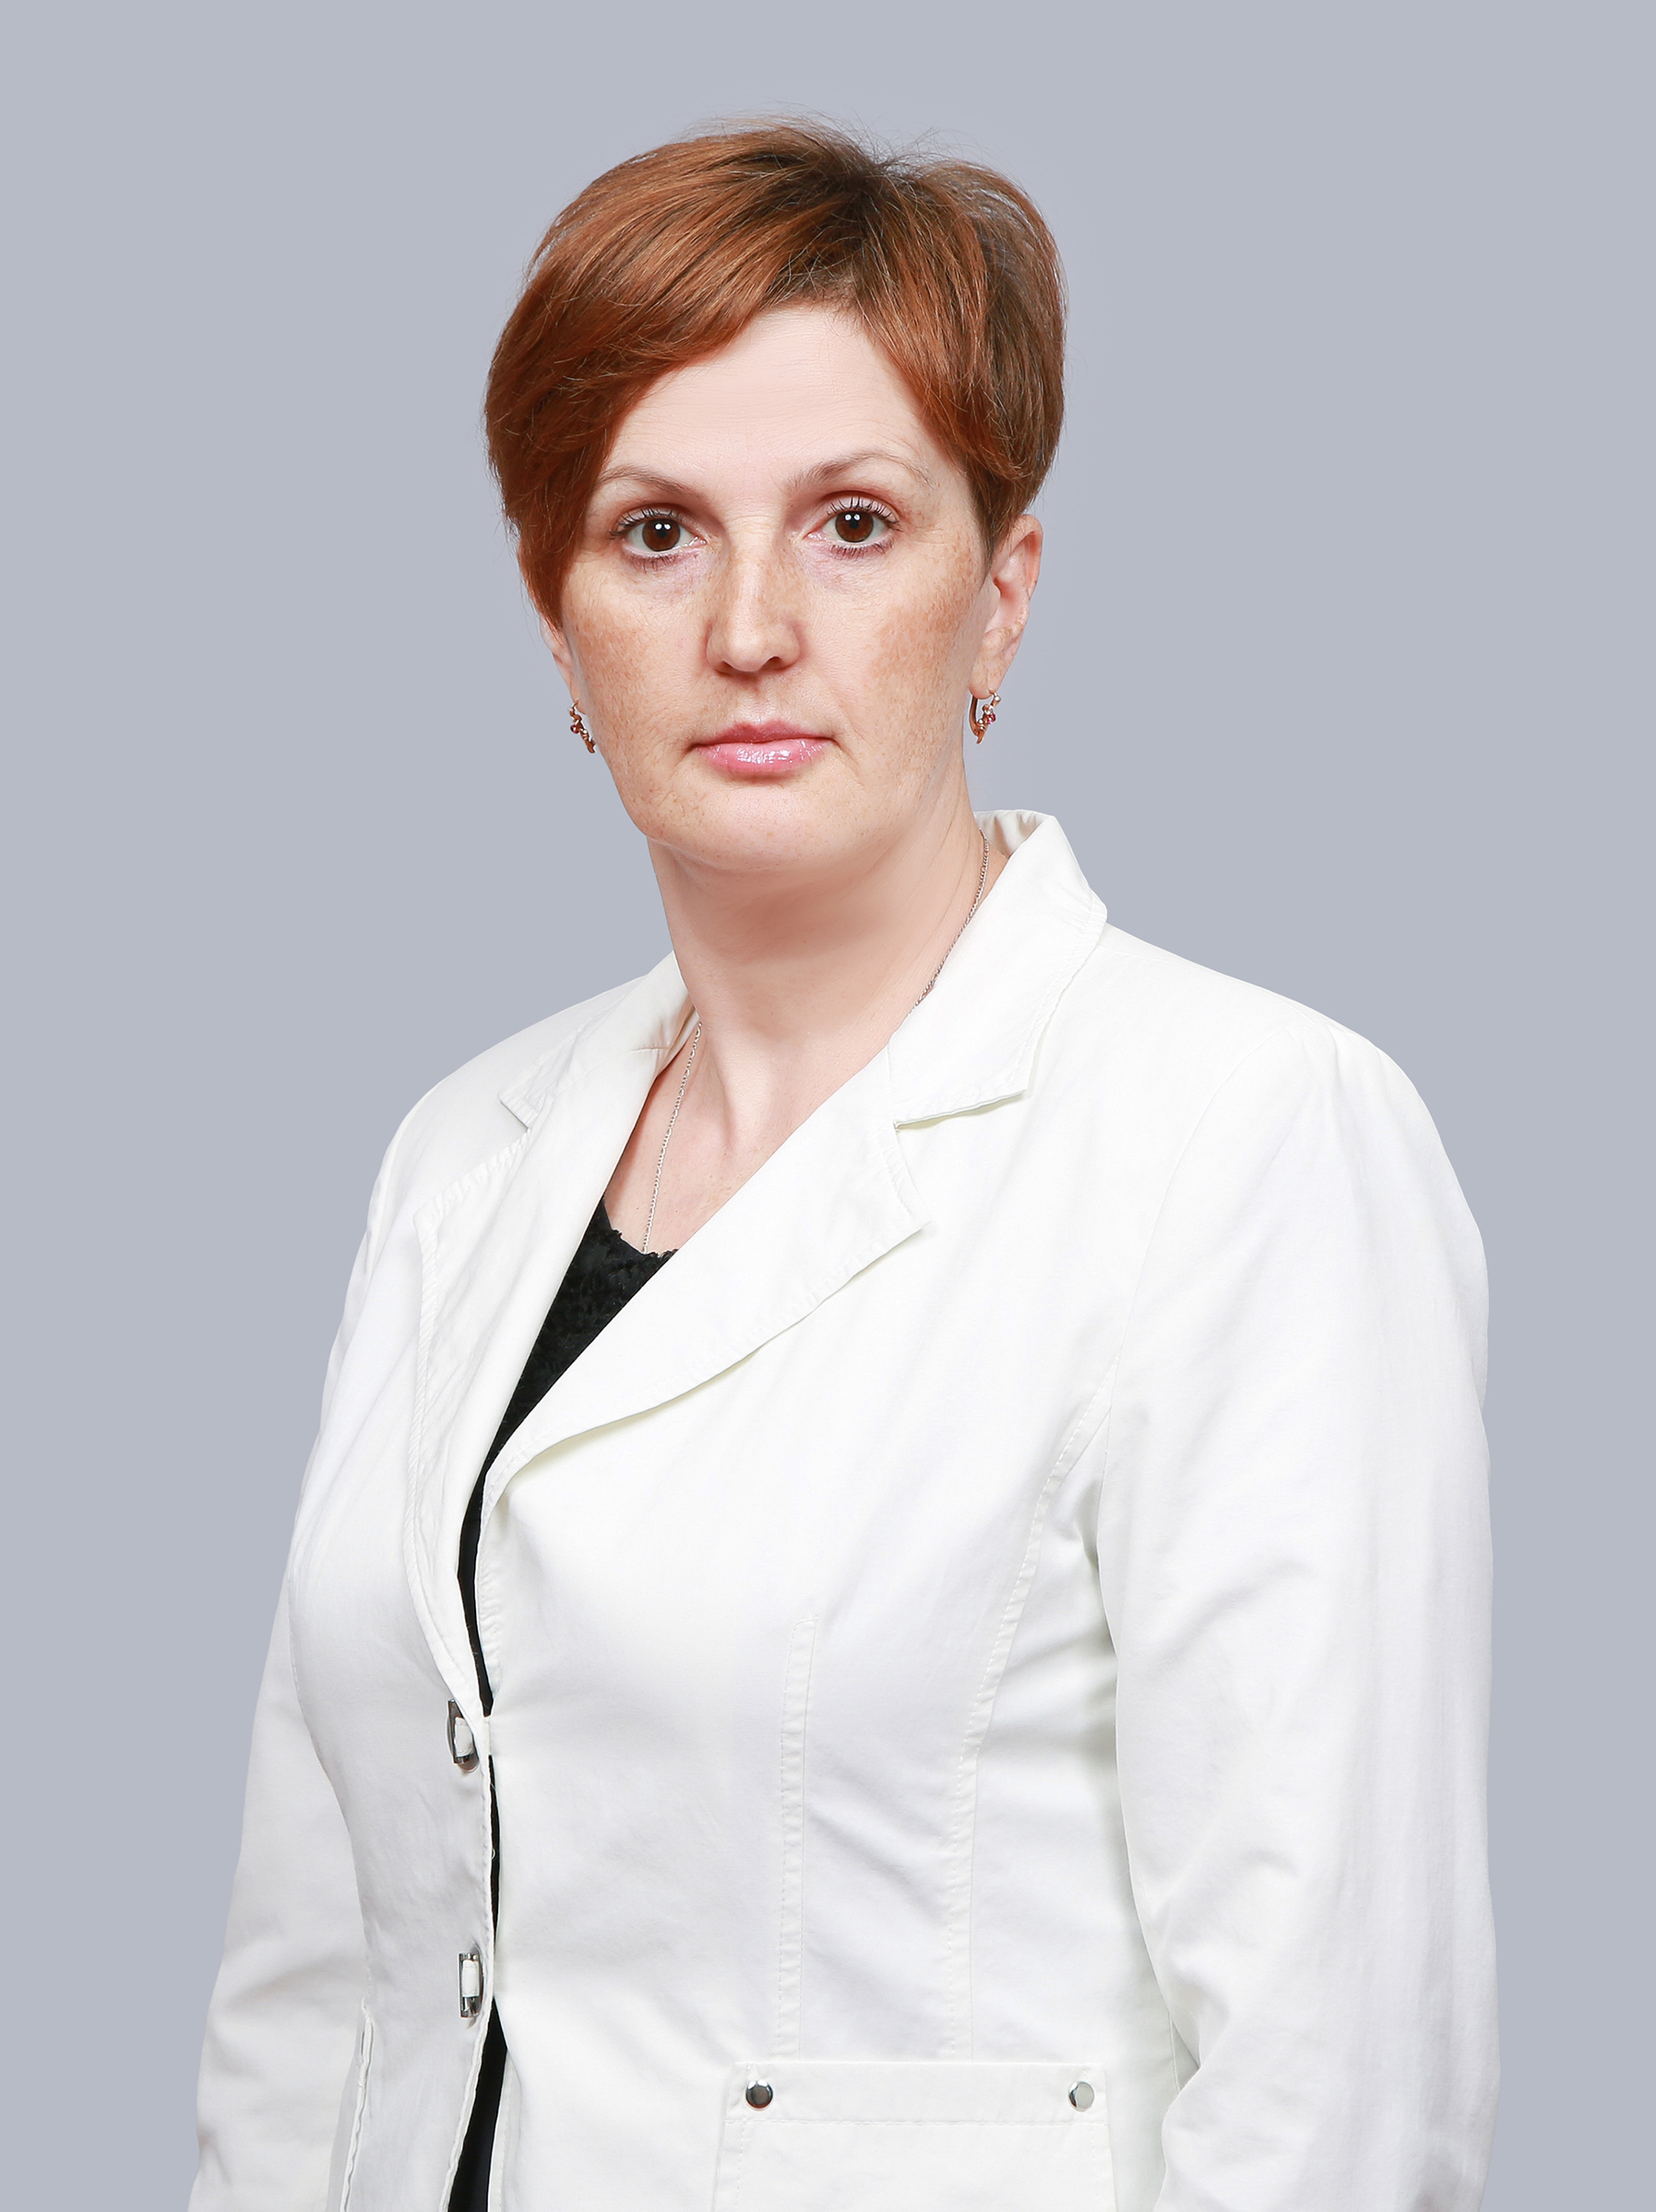 Гаврилова Ольга Владимировна.